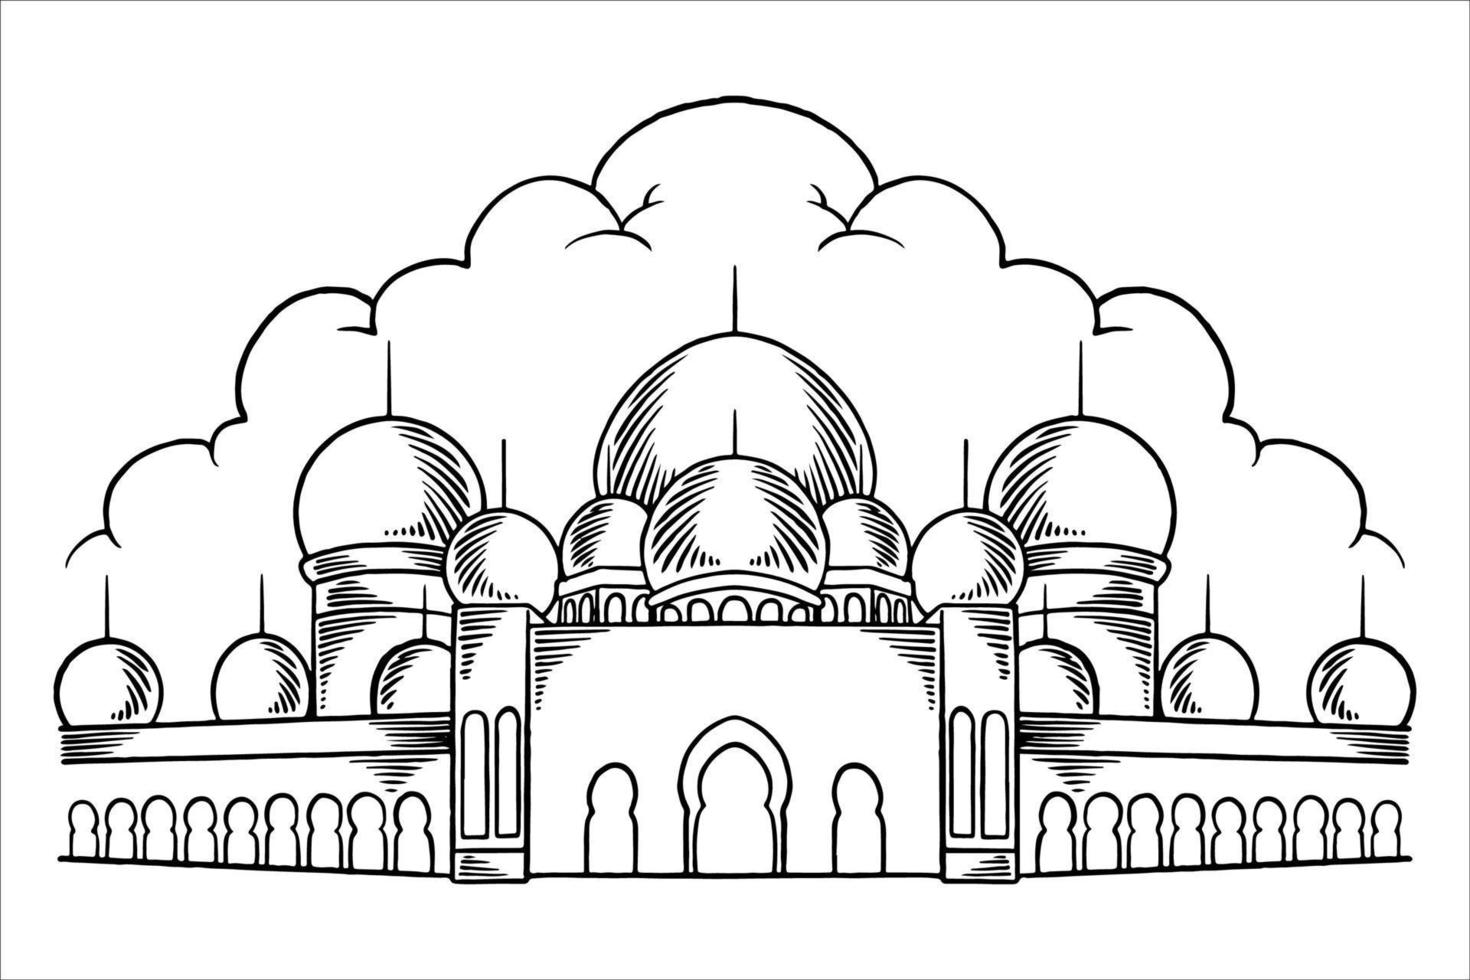 dibujado a mano o boceto de la gran mezquita para elementos islámicos de ramadán. vector